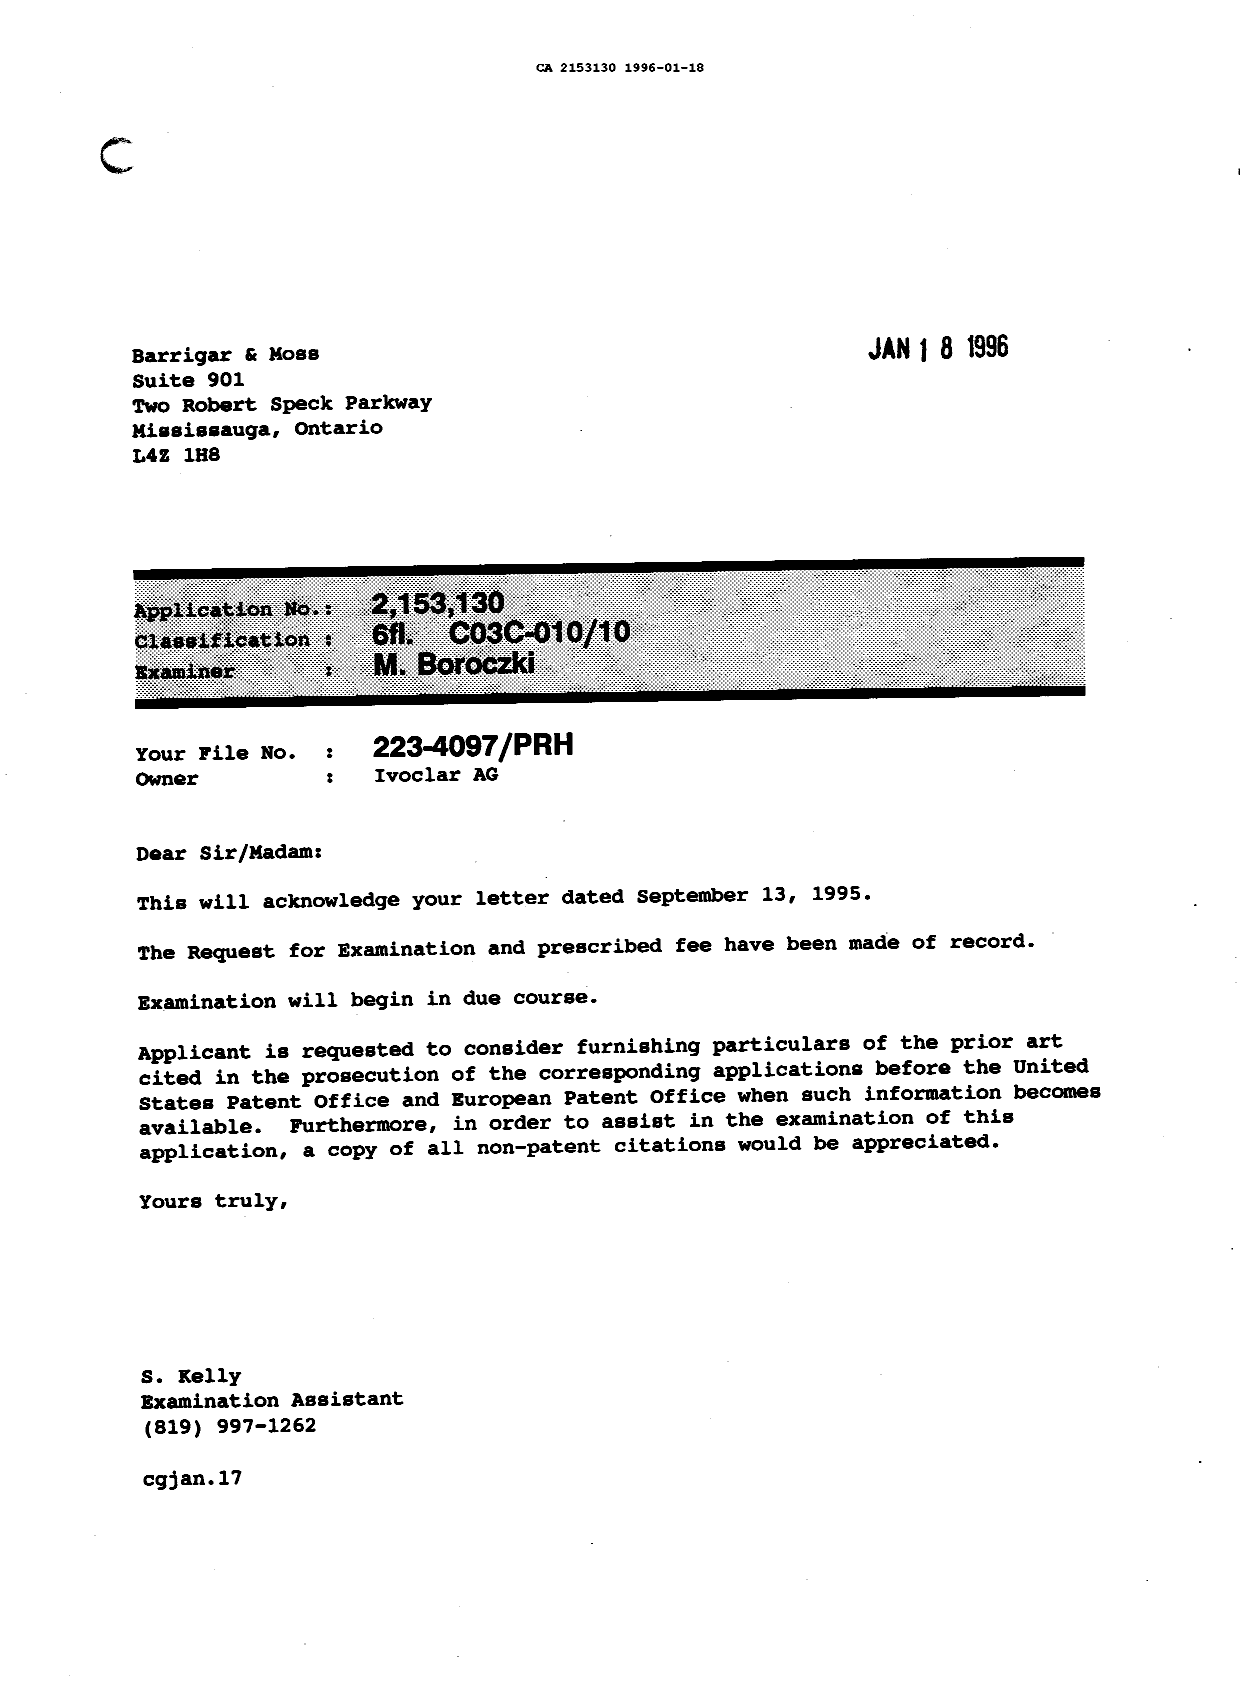 Document de brevet canadien 2153130. Lettre du bureau 19960118. Image 1 de 1